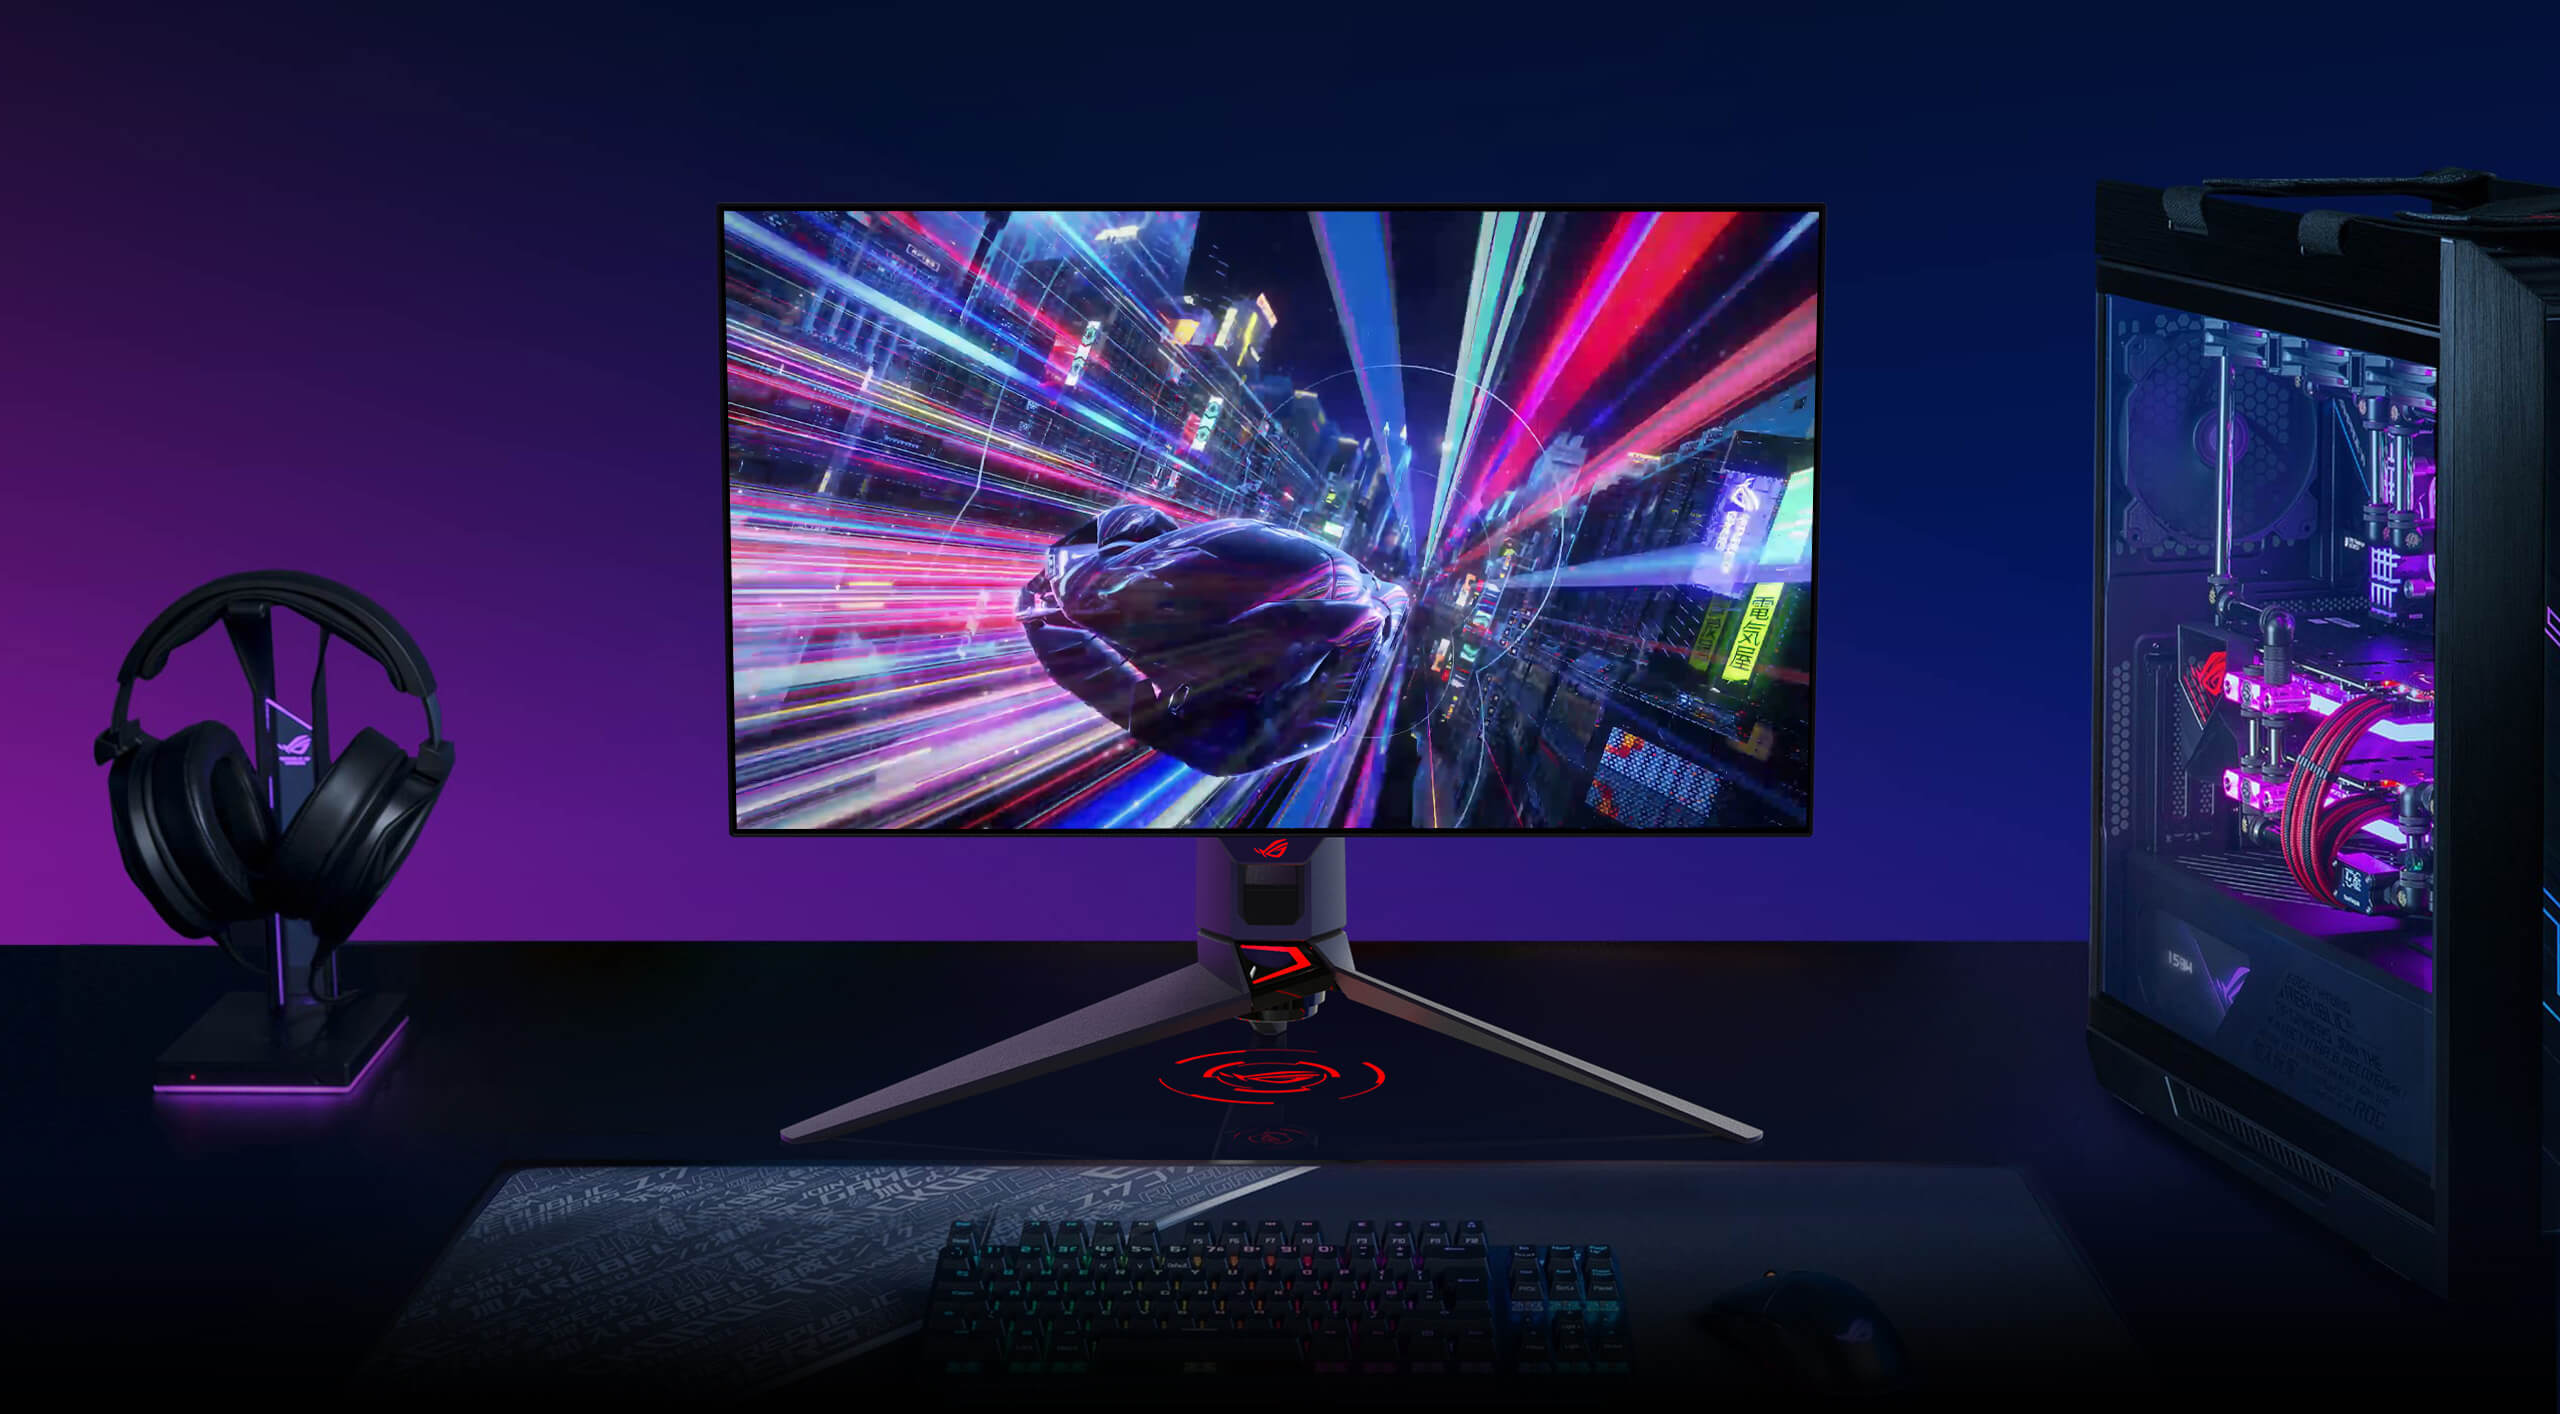 PG27AQDM to 27-calowy monitor gamingowy OLED 240 Hz, który oferuje wyjątkowe efekty wizualne w grach.